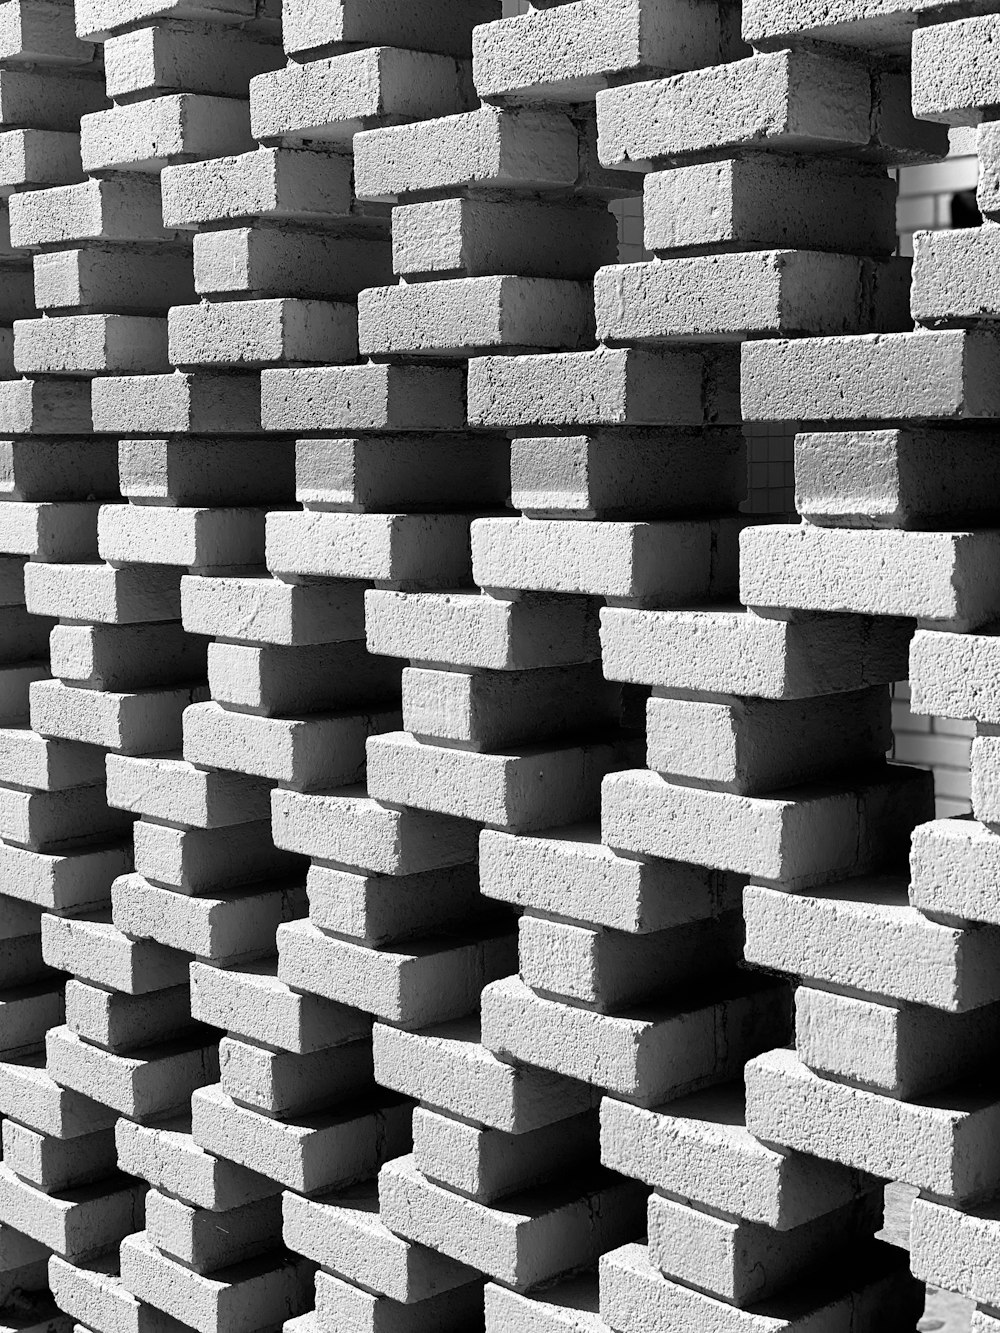 Photographie en noir et blanc d’une pile de briques